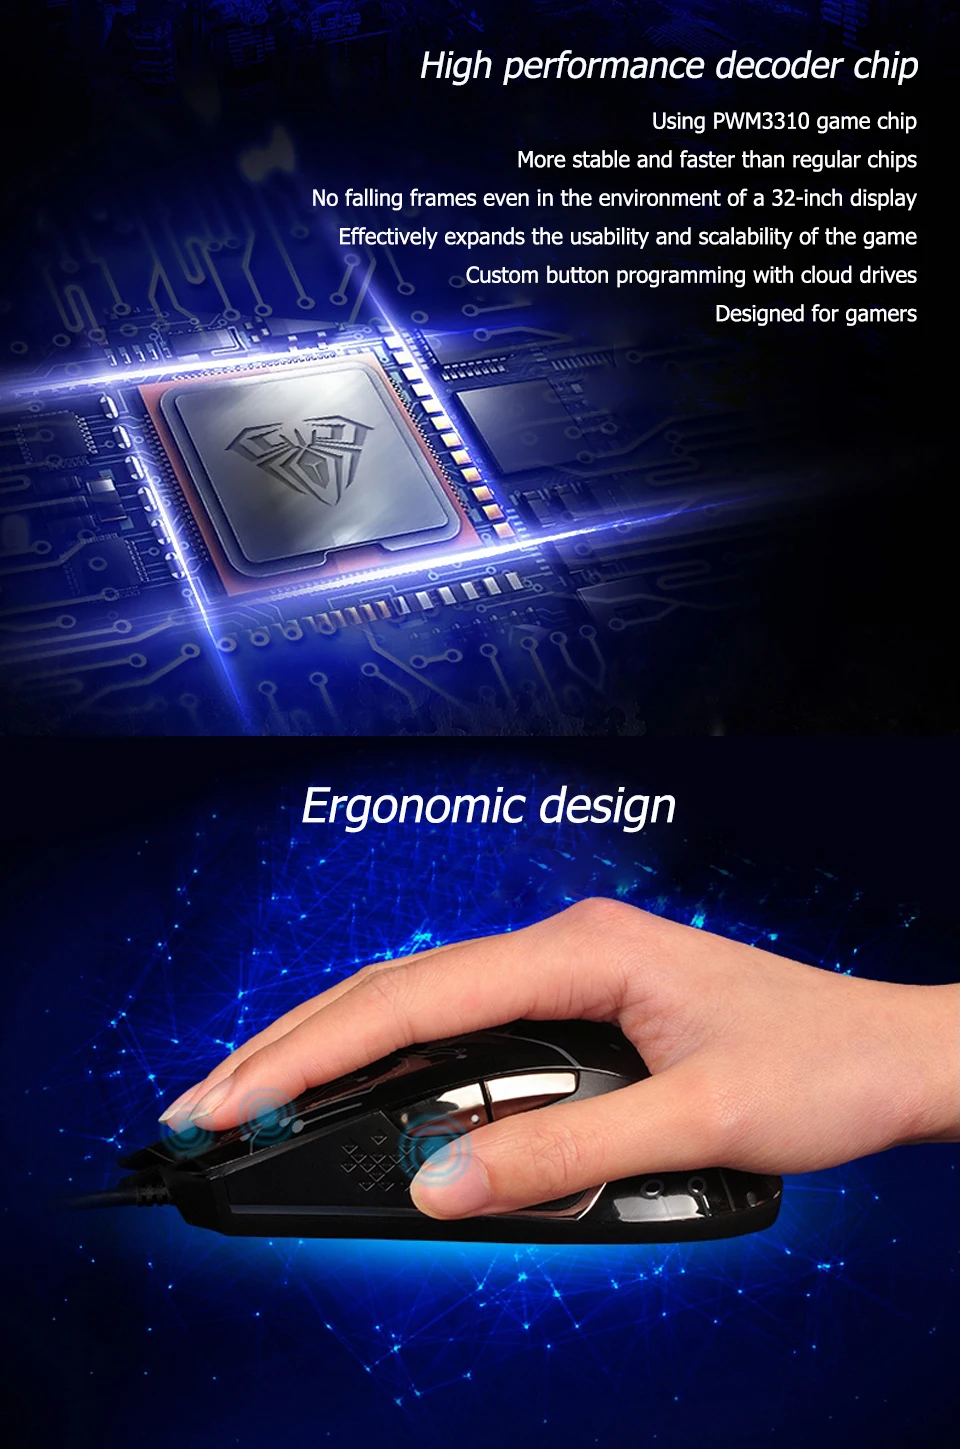 AULA игровая мышь USB Проводная RGB эргономичная dpi 5000 регулируемая для ноутбука настольного ПК компьютера аксессуары геймерская мышь# SI9010